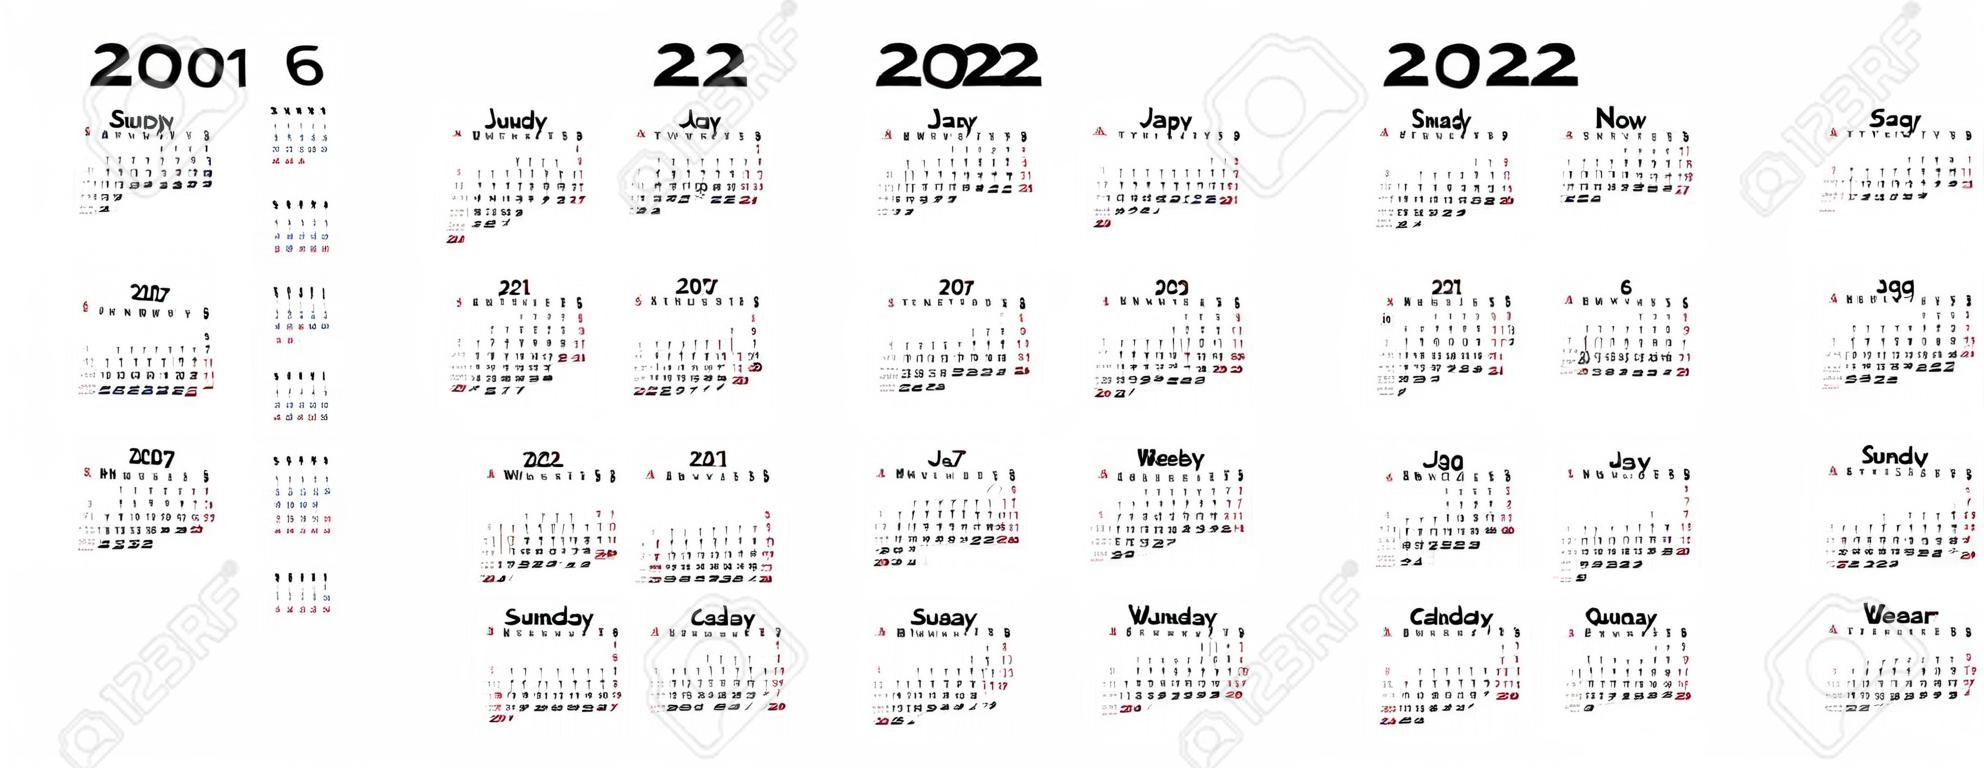 Calendario 2020, 2019, 2021, 2022, 2023, 2024, 2025, 2026, 2027 anni. Vettore. La settimana inizia domenica. Modello di cancelleria dal design minimale. Organizzatore del calendario annuale per settimane. Orientamento orizzontale.